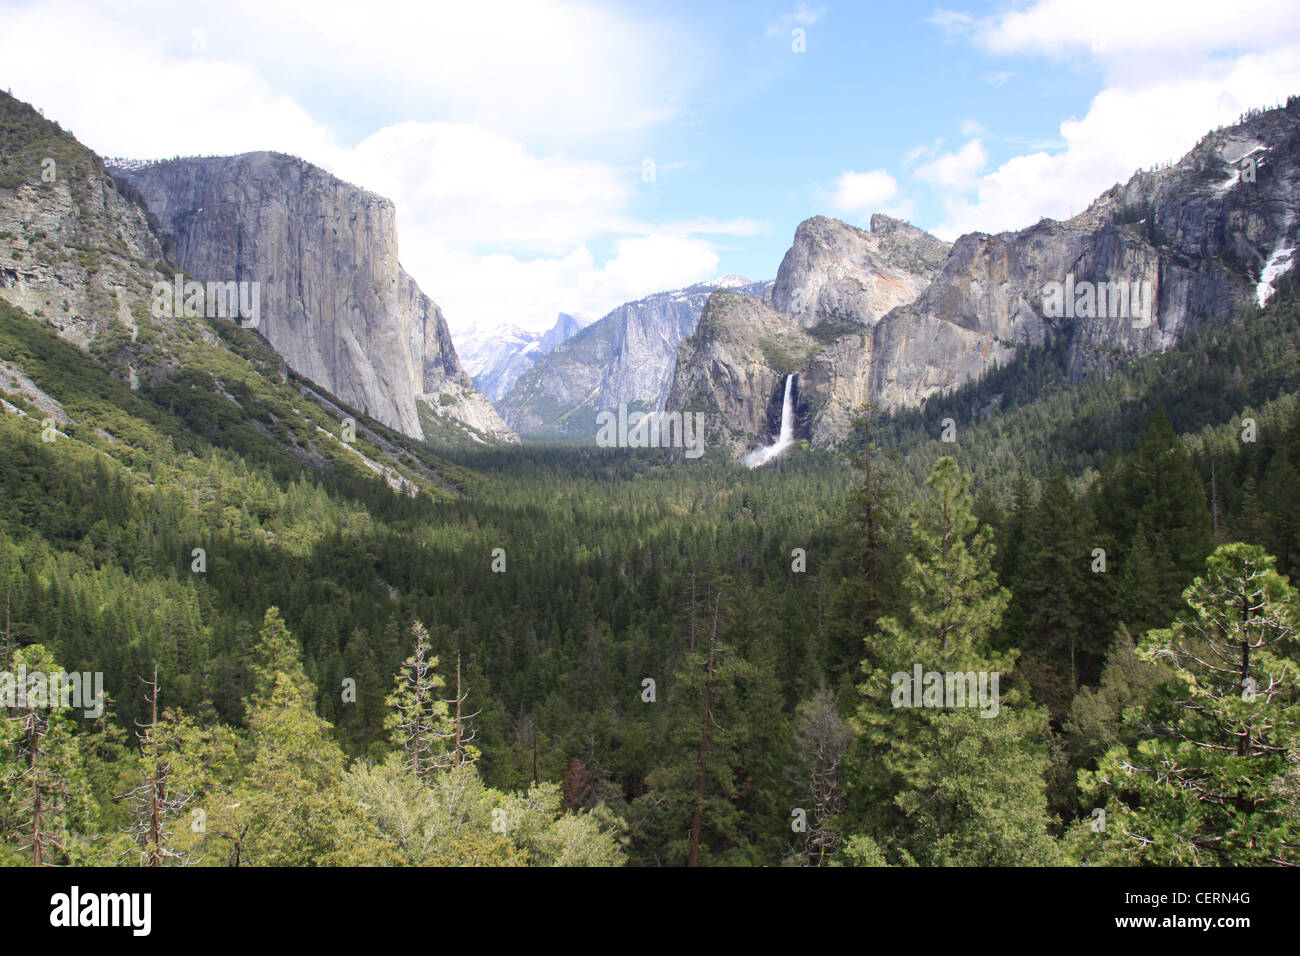 Vue panoramique sur la vallée de Yosemite Park avec demi-dôme en arrière-plan. Chute d'eau, des montagnes et des sapins inclus. Scenic Banque D'Images